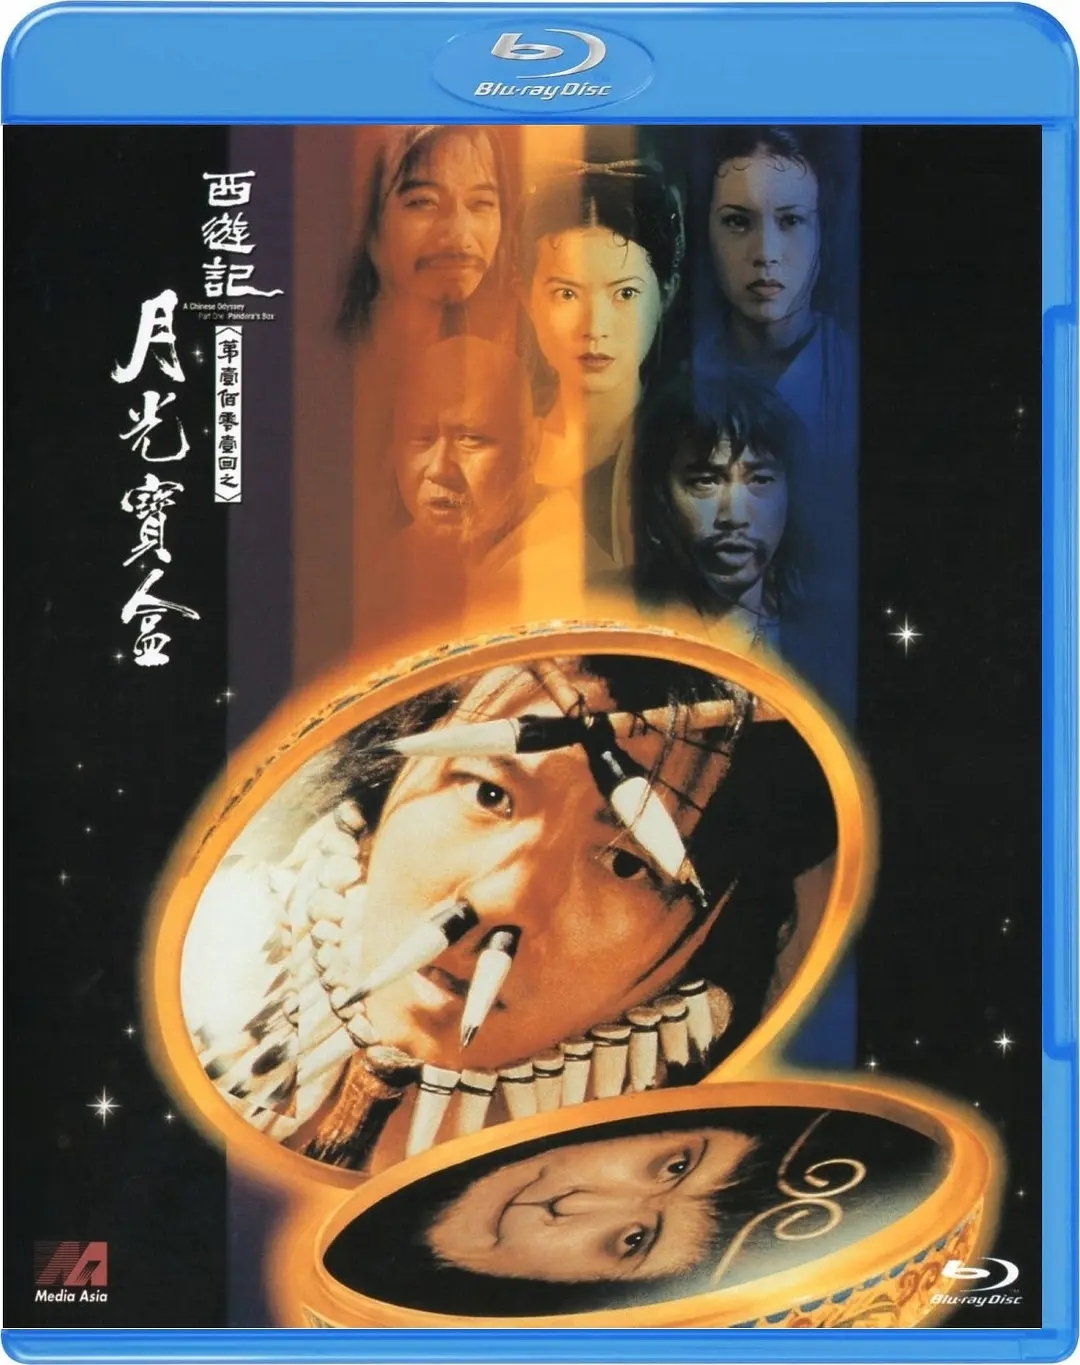 大话西游之月光宝盒 (1995) - 海报 — The Movie Database (TMDB)